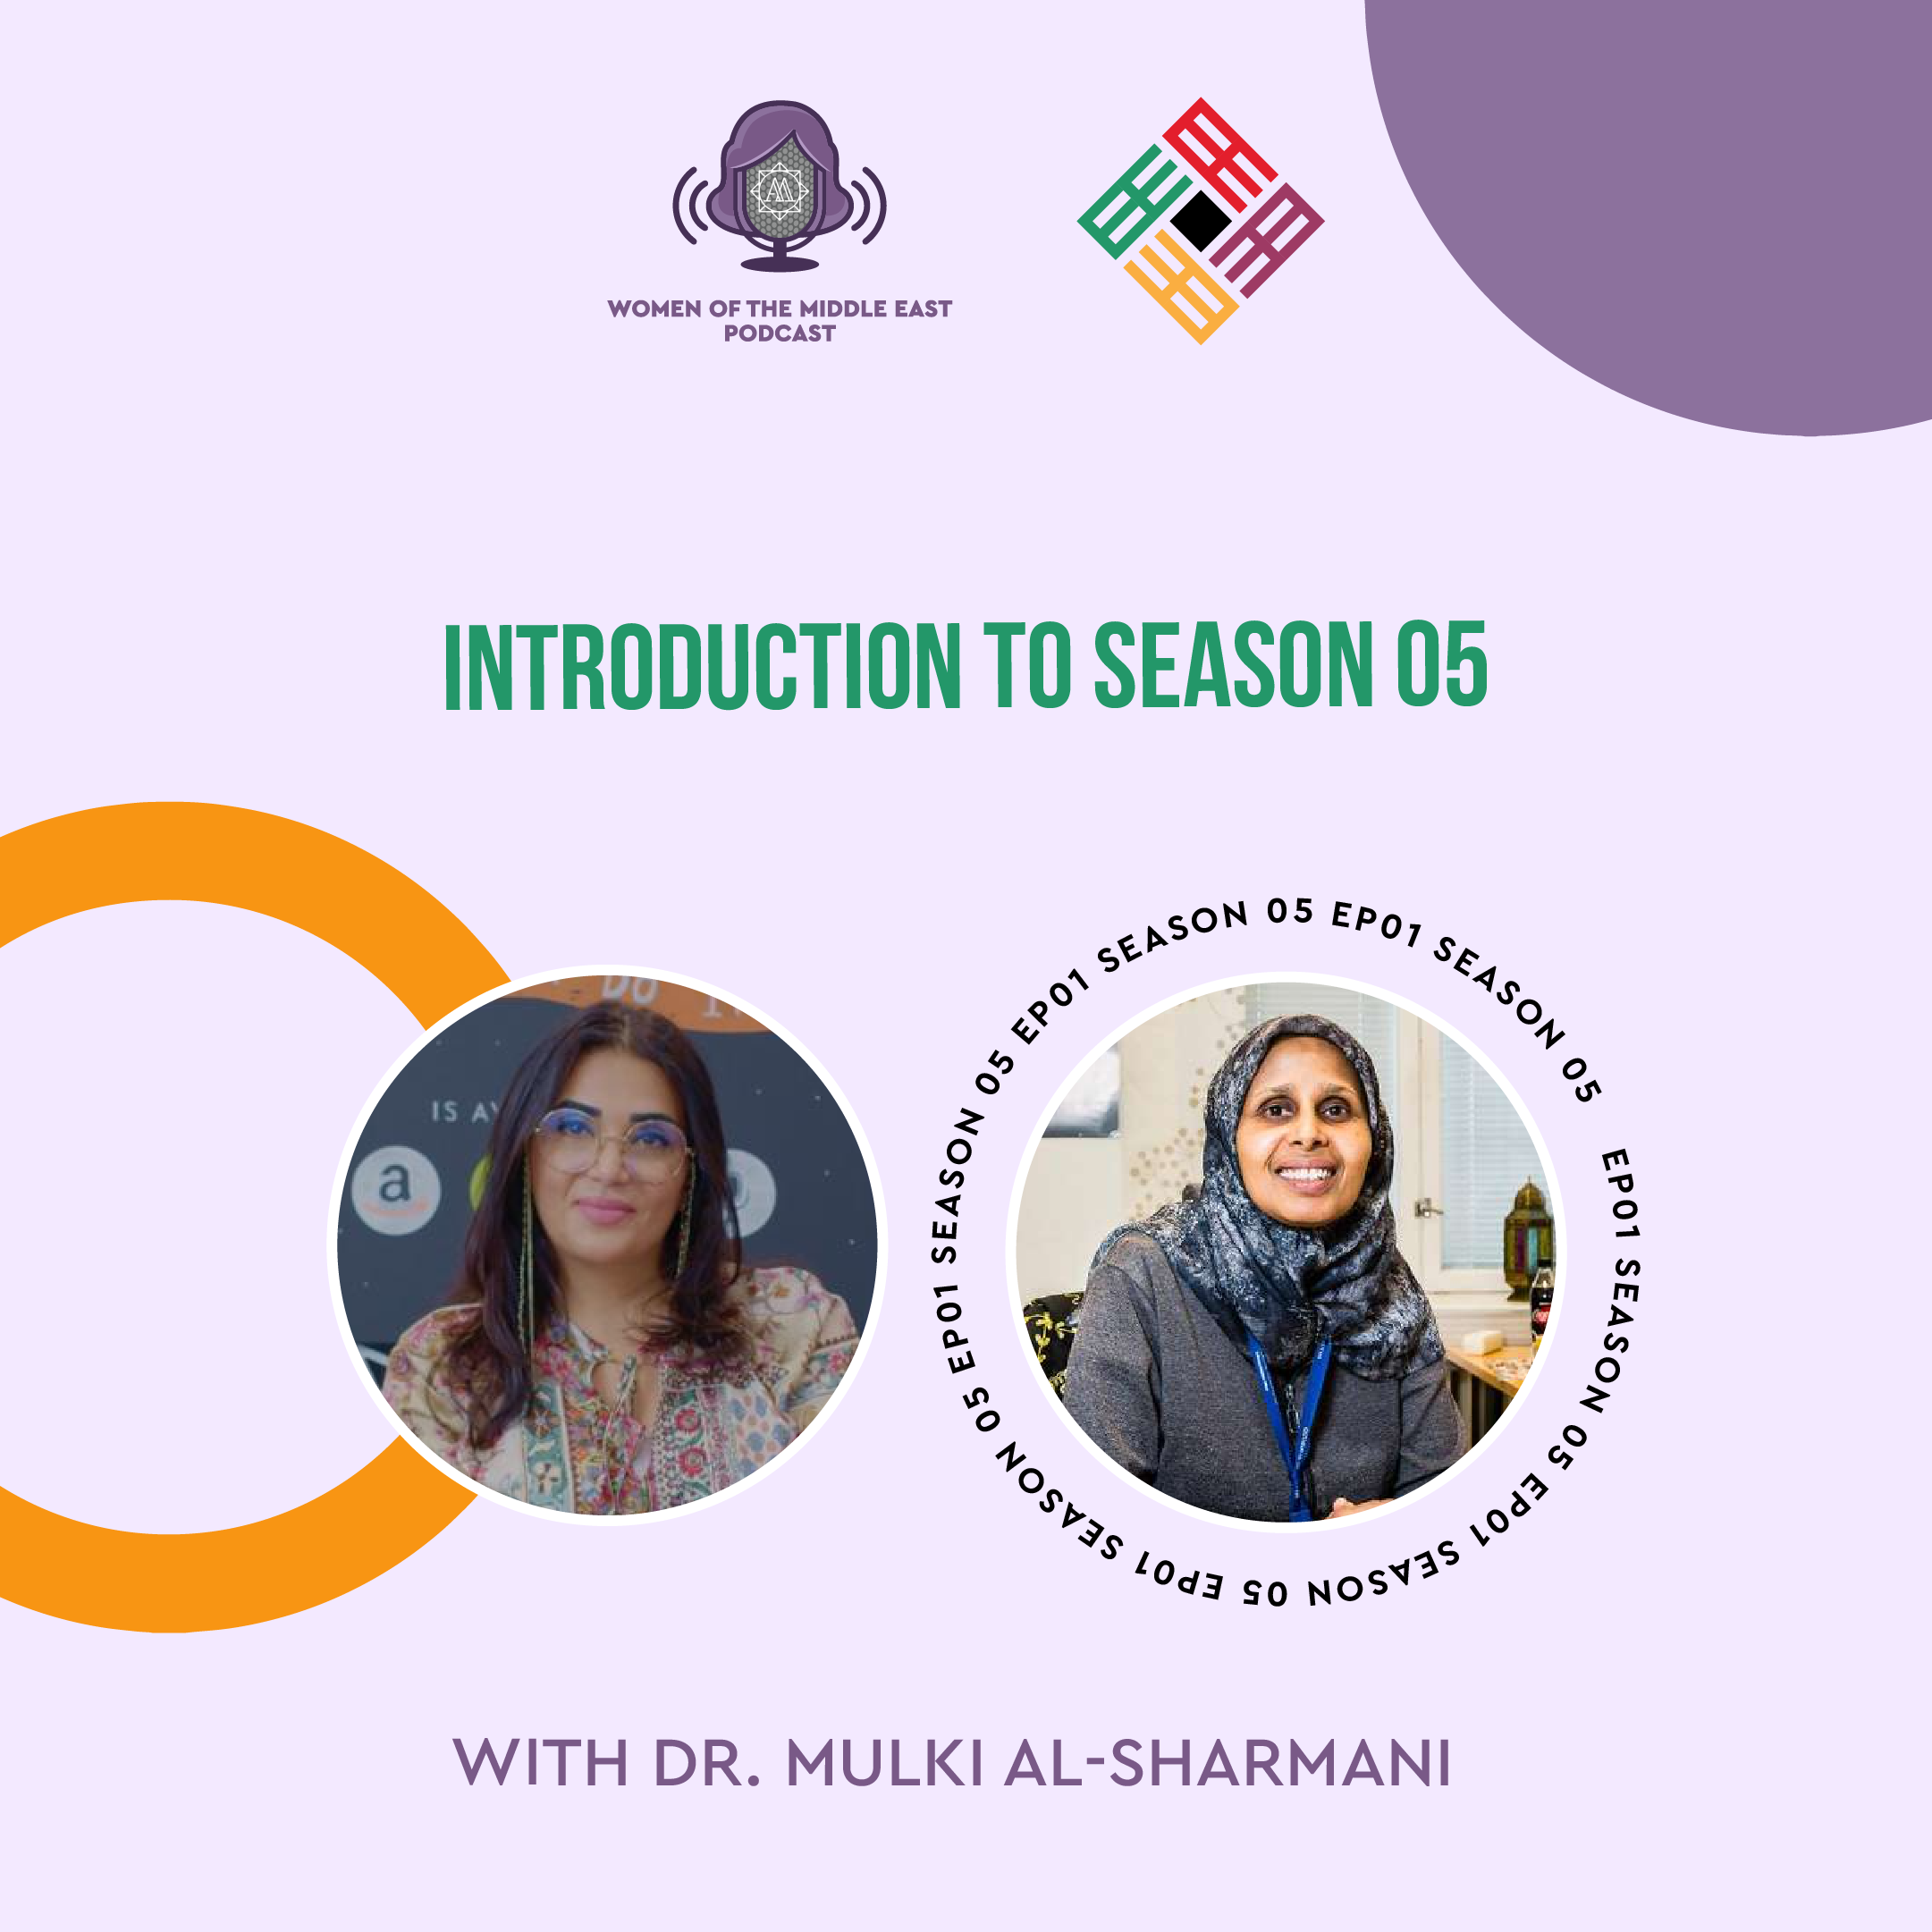 S5 E1: Introduction featuring Dr. Mulki Al-Sharmani